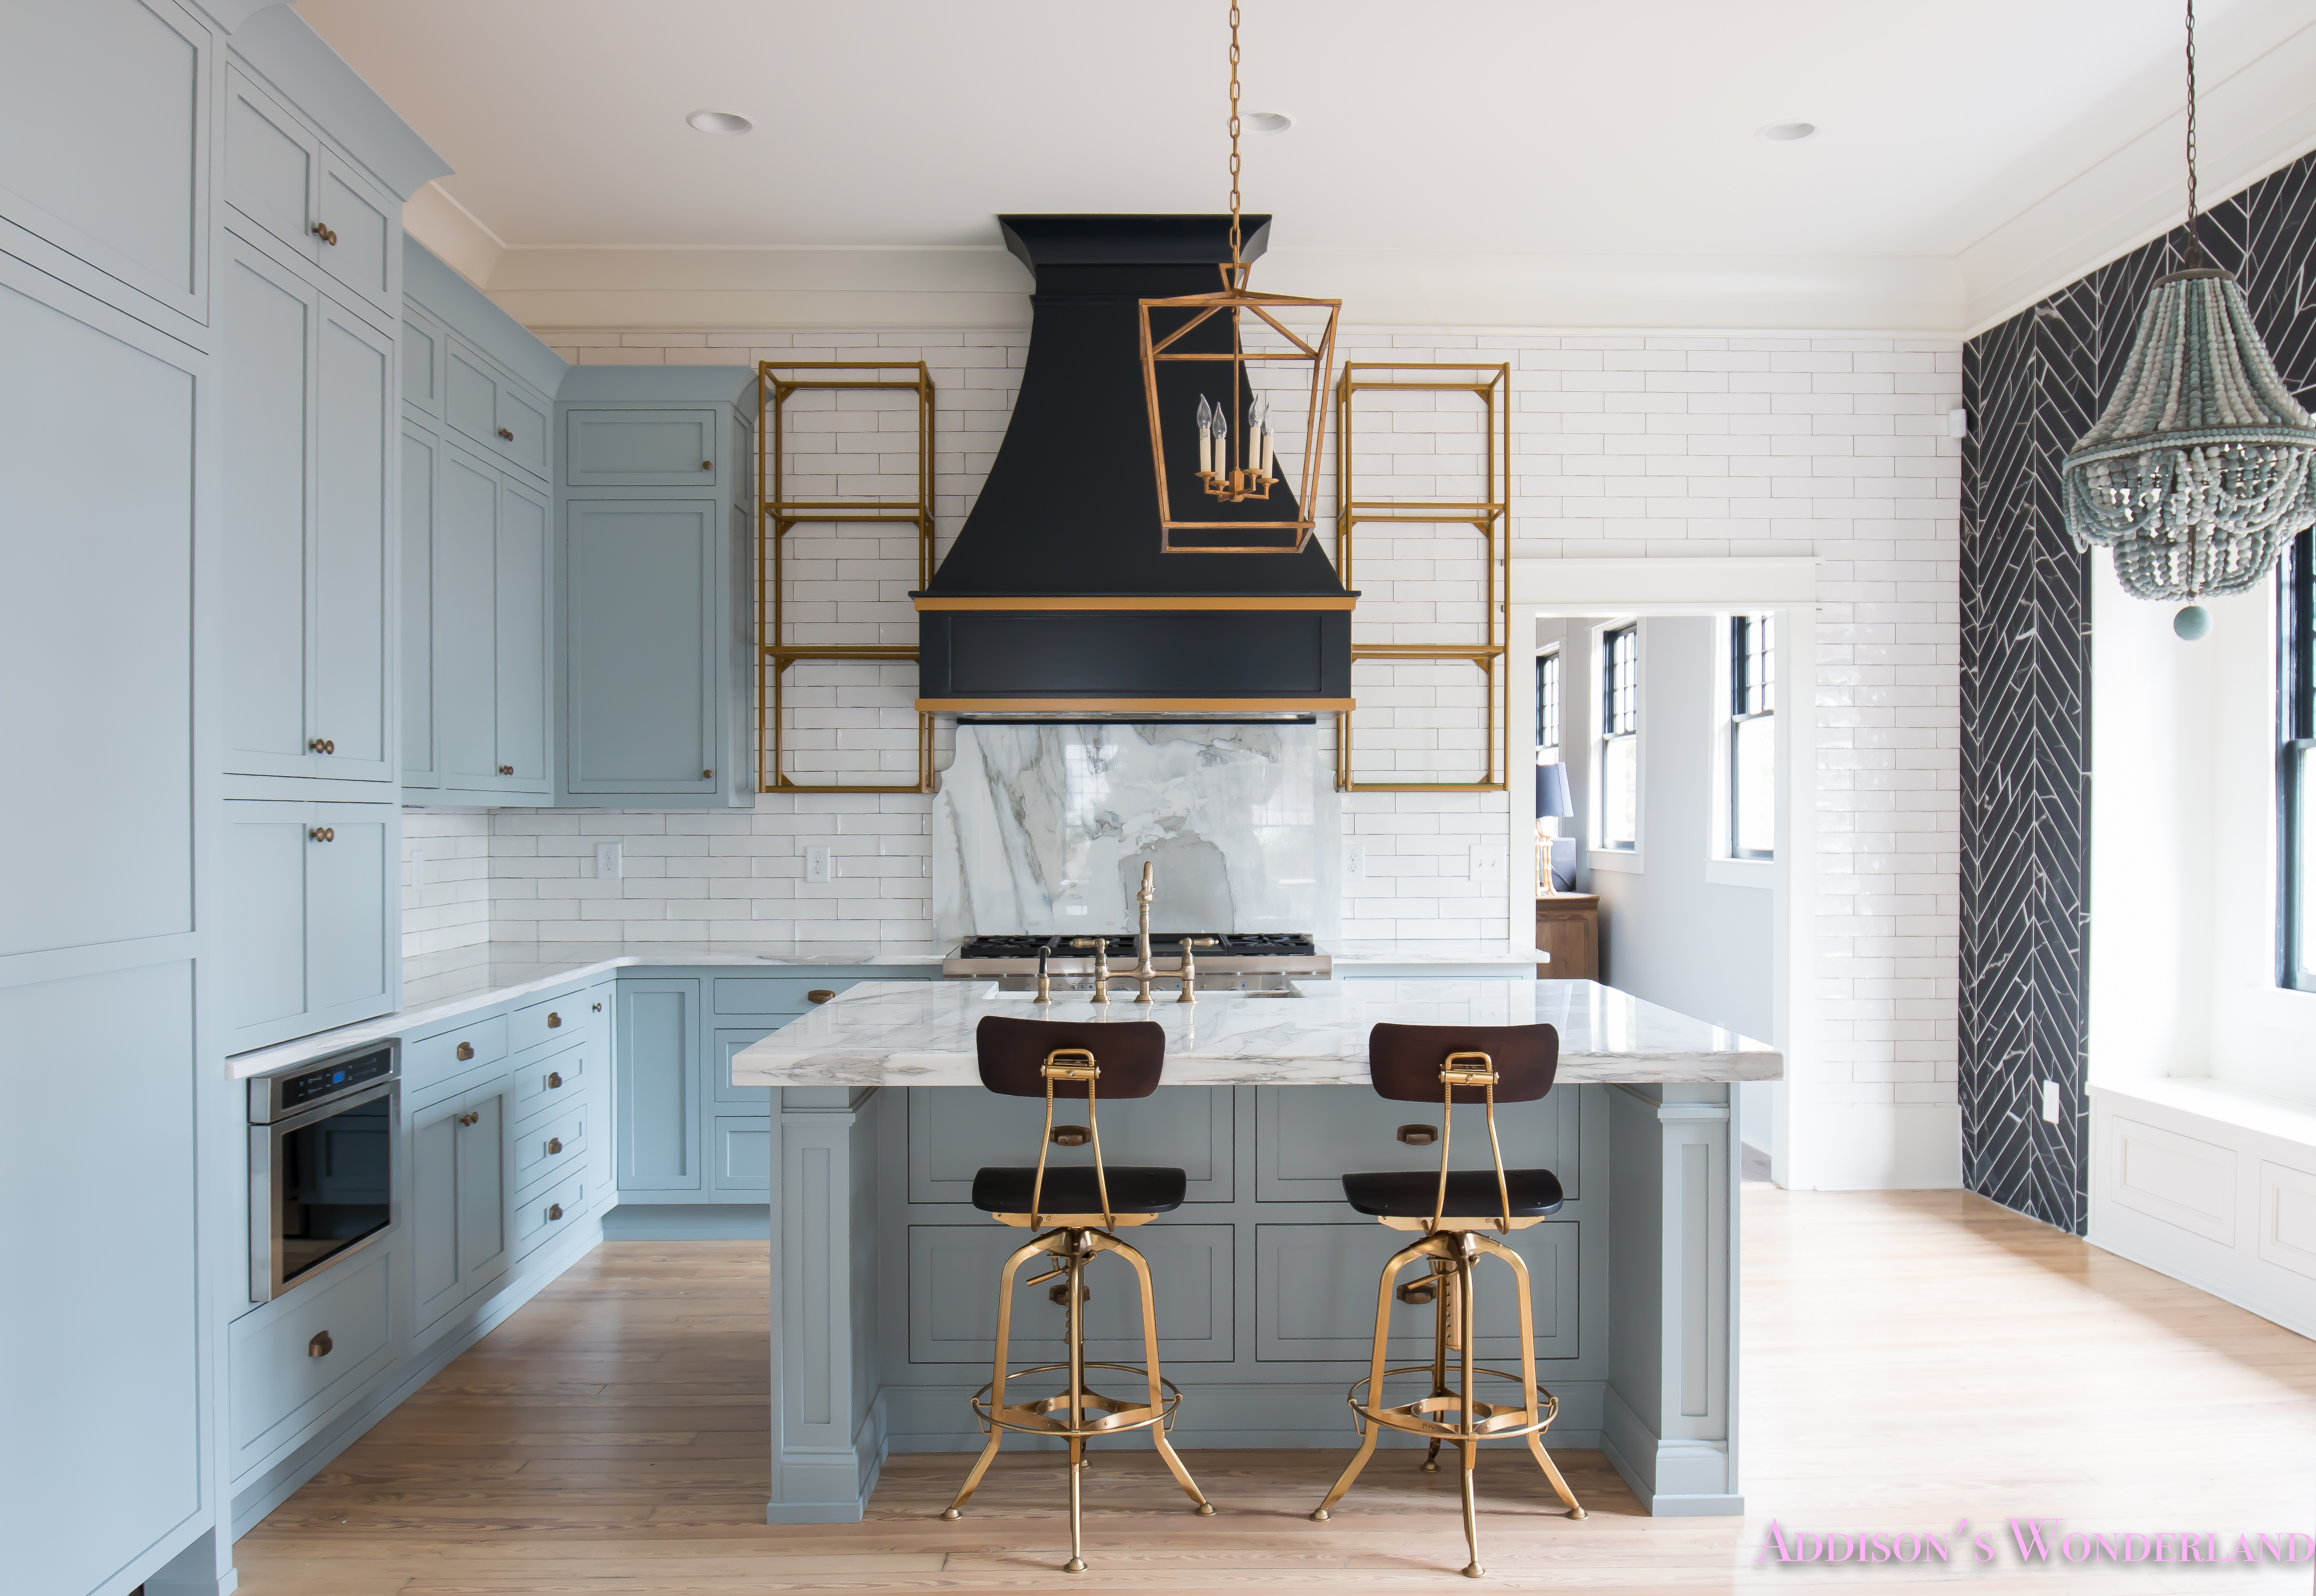 https://addisonswonderland.com/our-vintage-modern-kitchen-reveal/a-classic-vintage-modern-kitchen-blue-gray-cabinets-inset-shaker-black-gold-vent-hood-antique-brass-faucet-white-subway-backsplash-tile-gold-open-shelves-6-of-16/